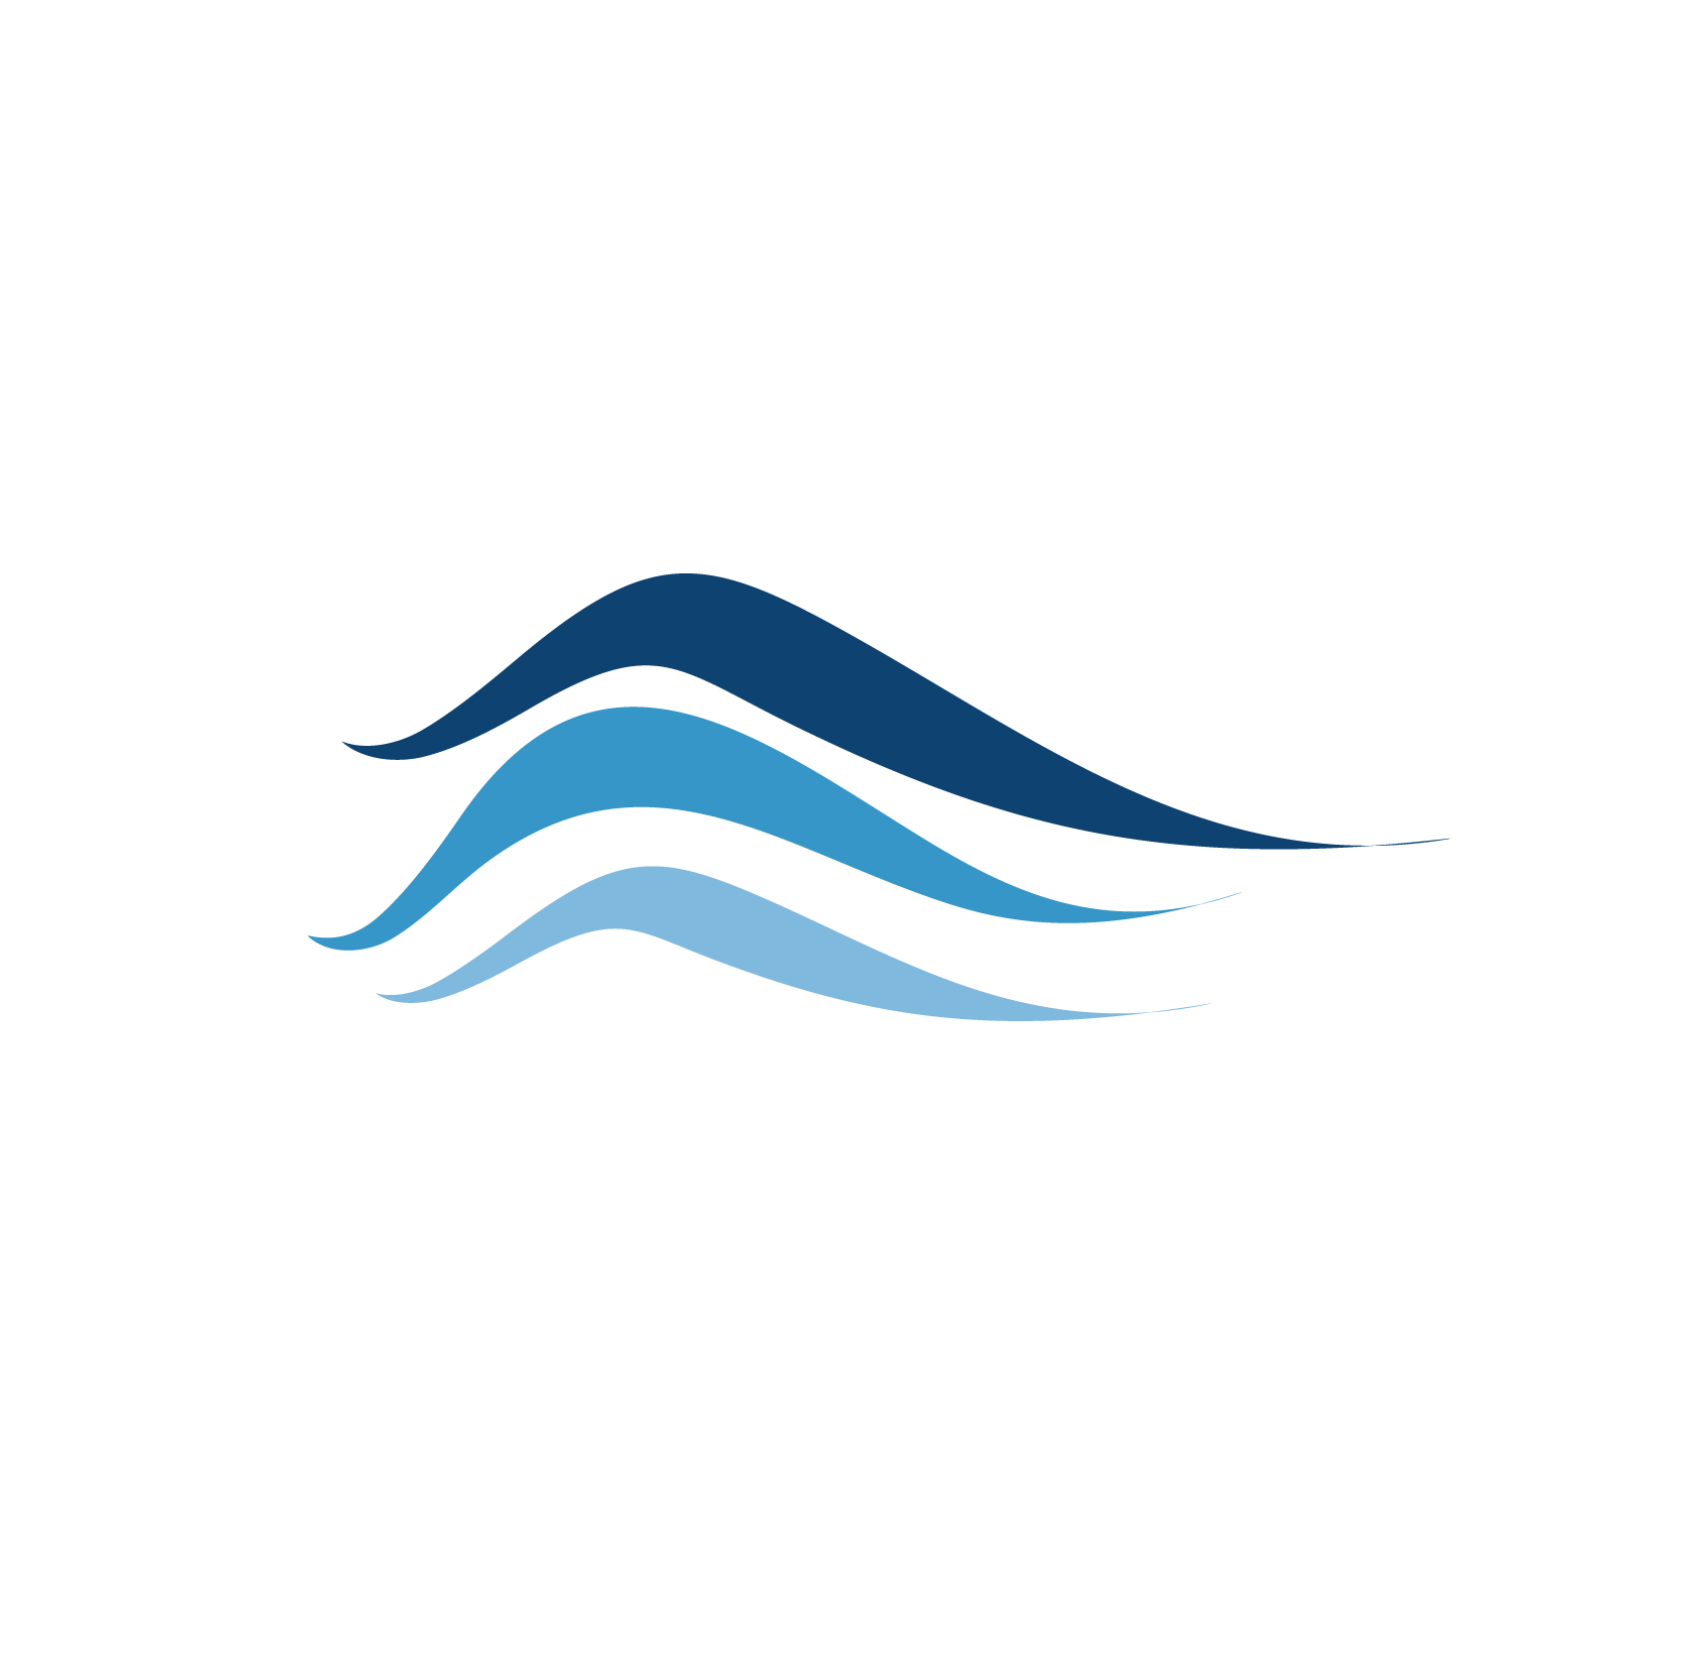 Ottawa River Waterway